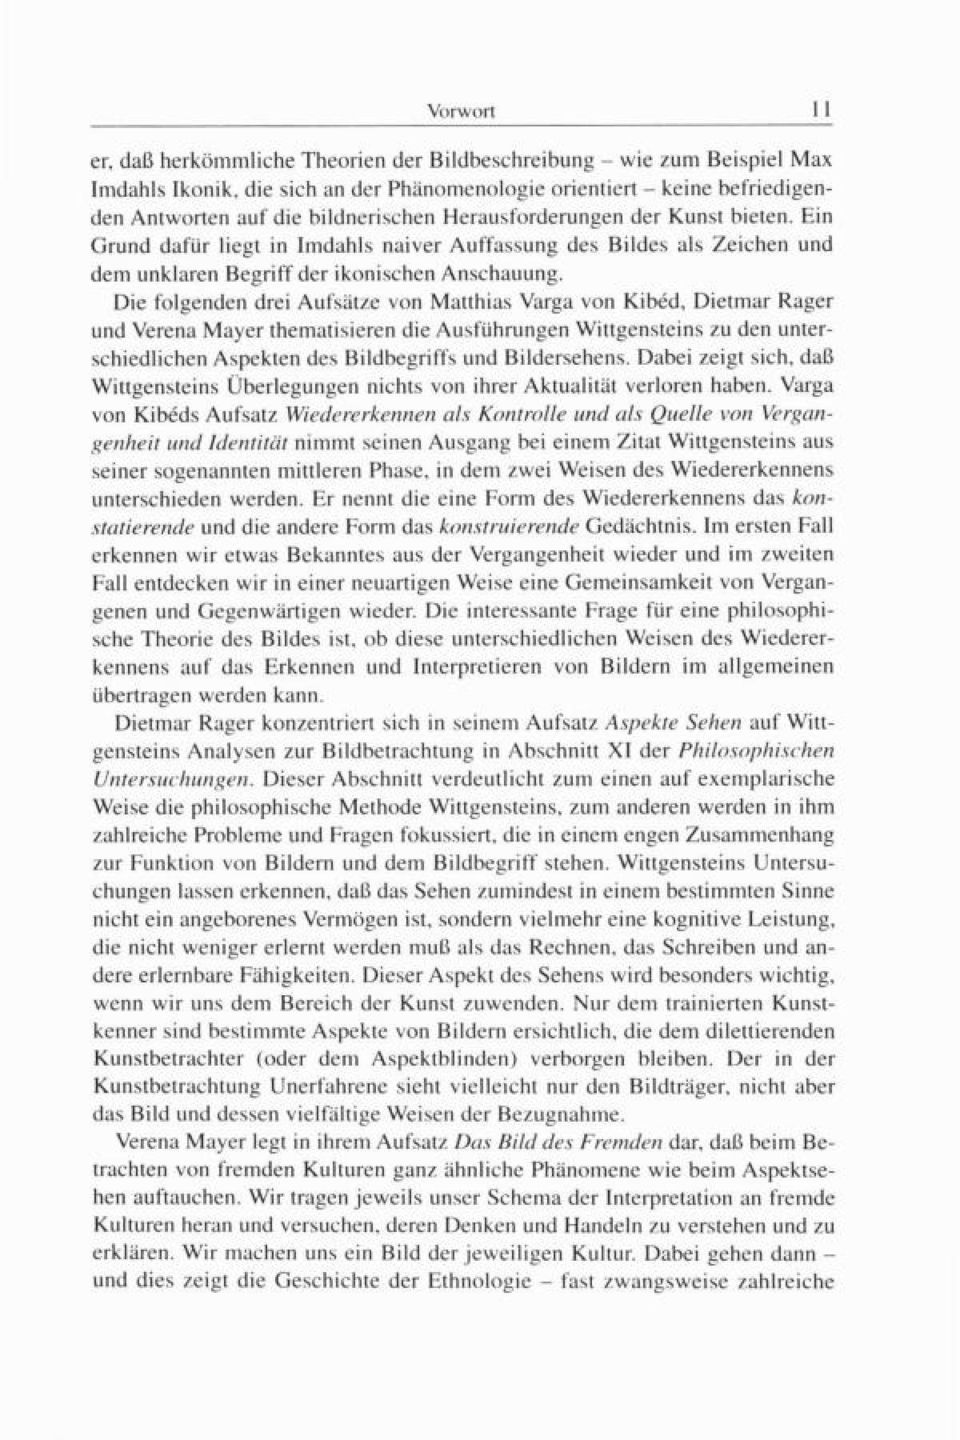 Die folgenden drei Aufsätze von Matthias Varga von Kibéd, Dietmar Rager und Verena Mayer thematisieren die Ausführungen Wittgensteins zu den unterschiedlichen Aspekten des Bildbegriffs und